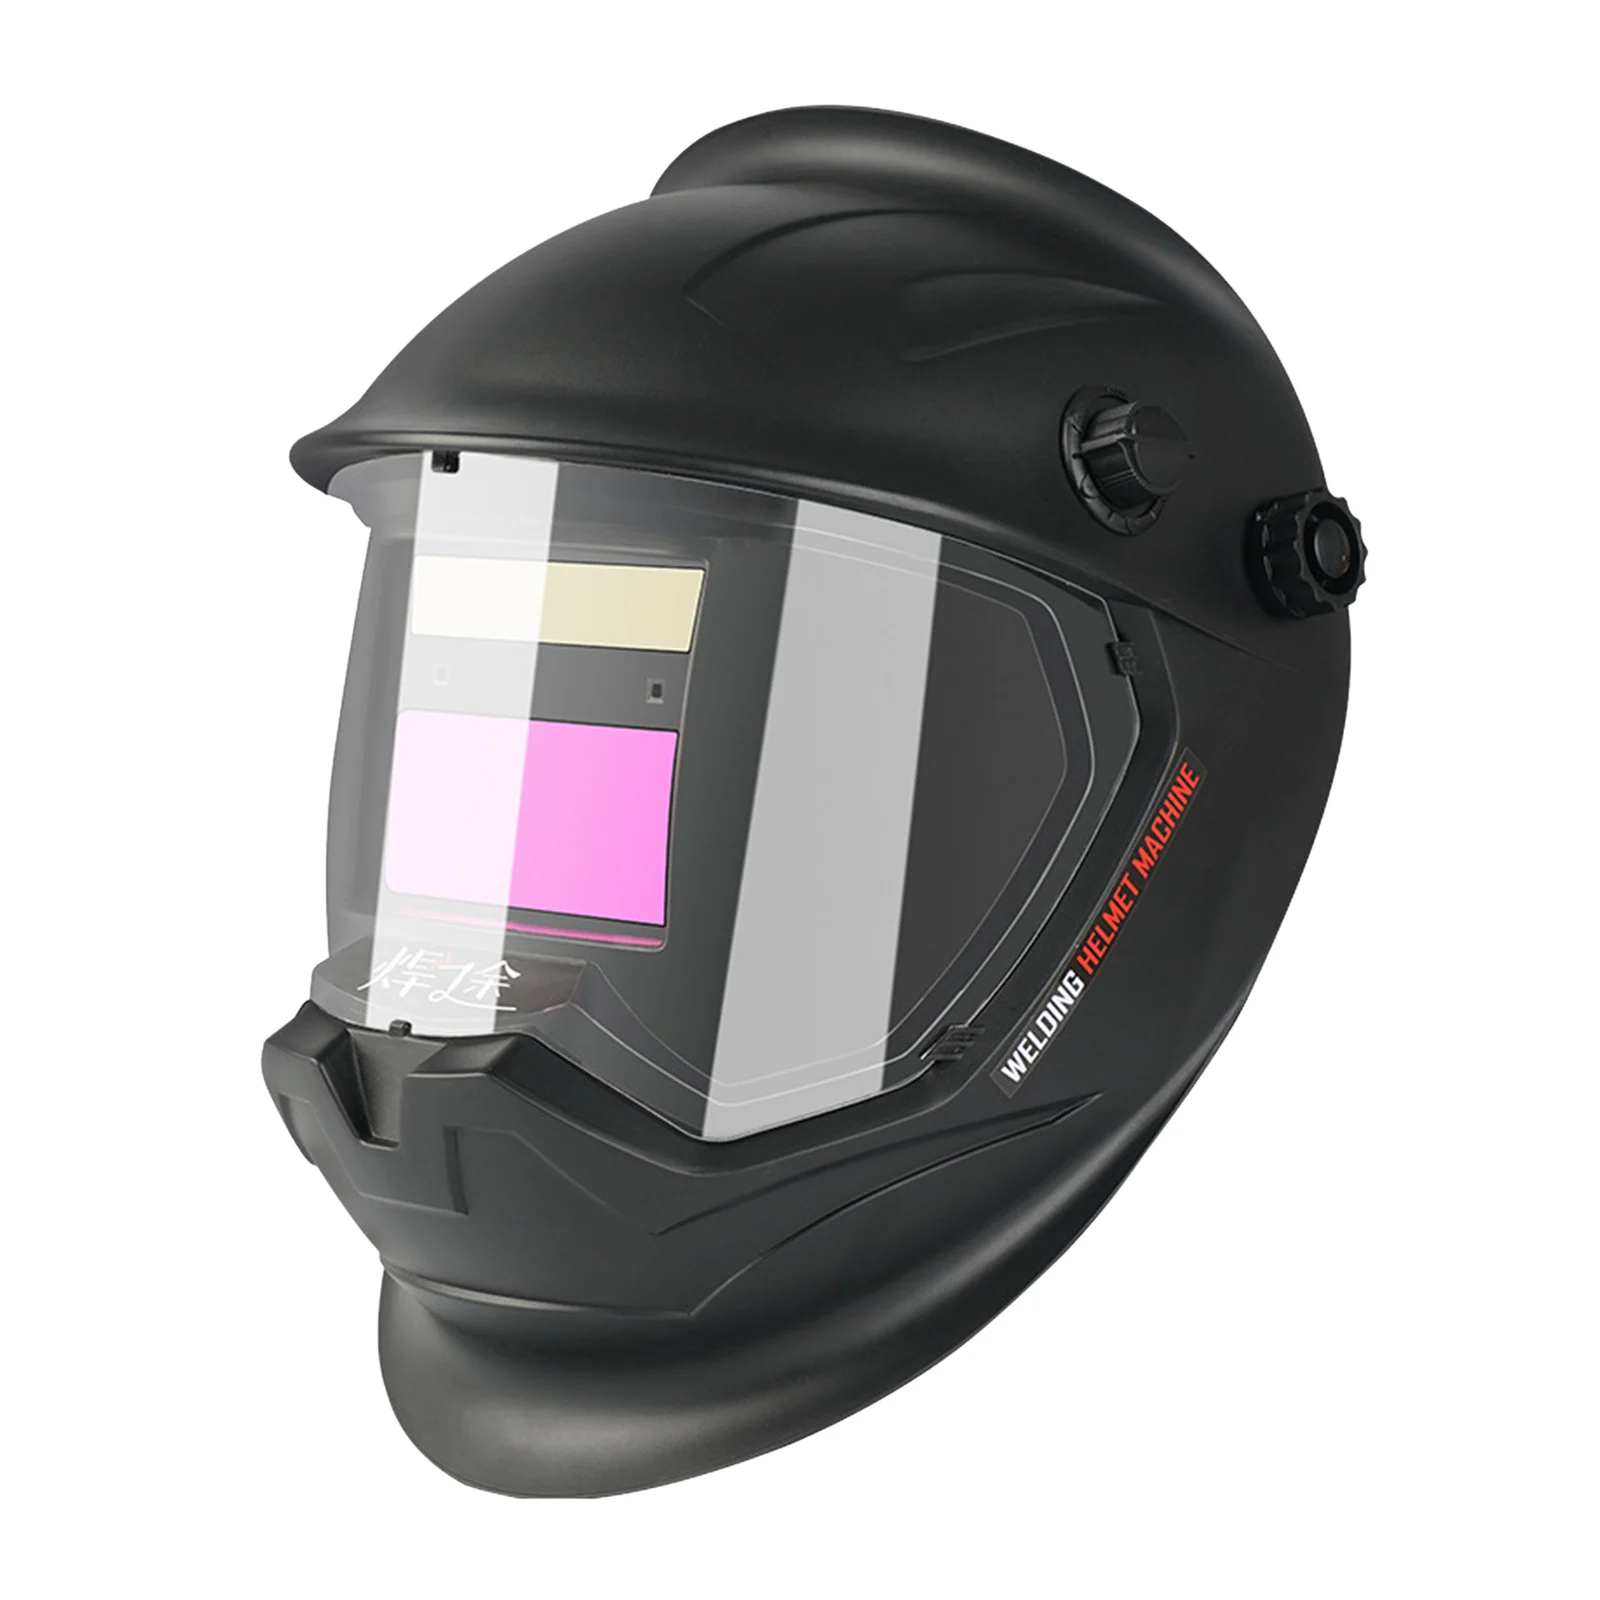 Deko Auto Darkening Adjustable Range Mig Mma Electric Welding Mask Helmet  Welding Lens For Welding Machine - Welding Helmets - AliExpress